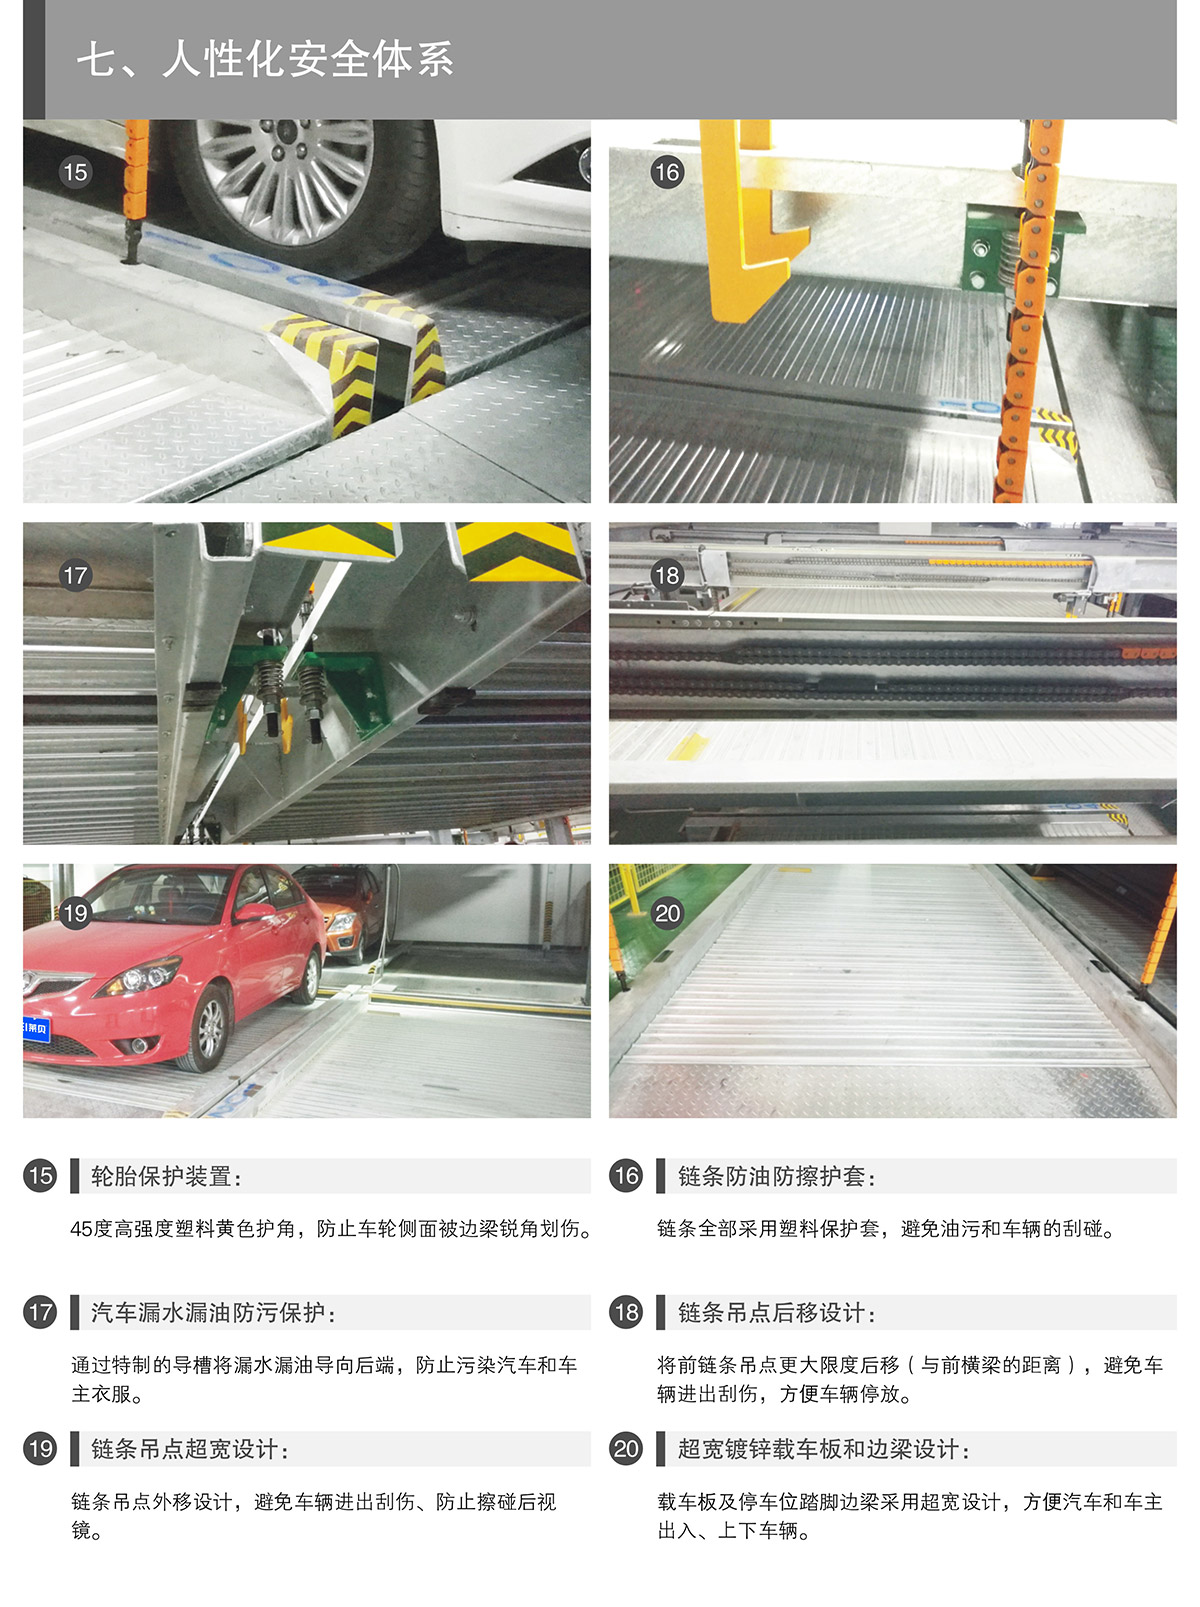 重庆PSH4-D2负二正二地坑四层升降横移类机械式立体停车设备人性化安全体系.jpg